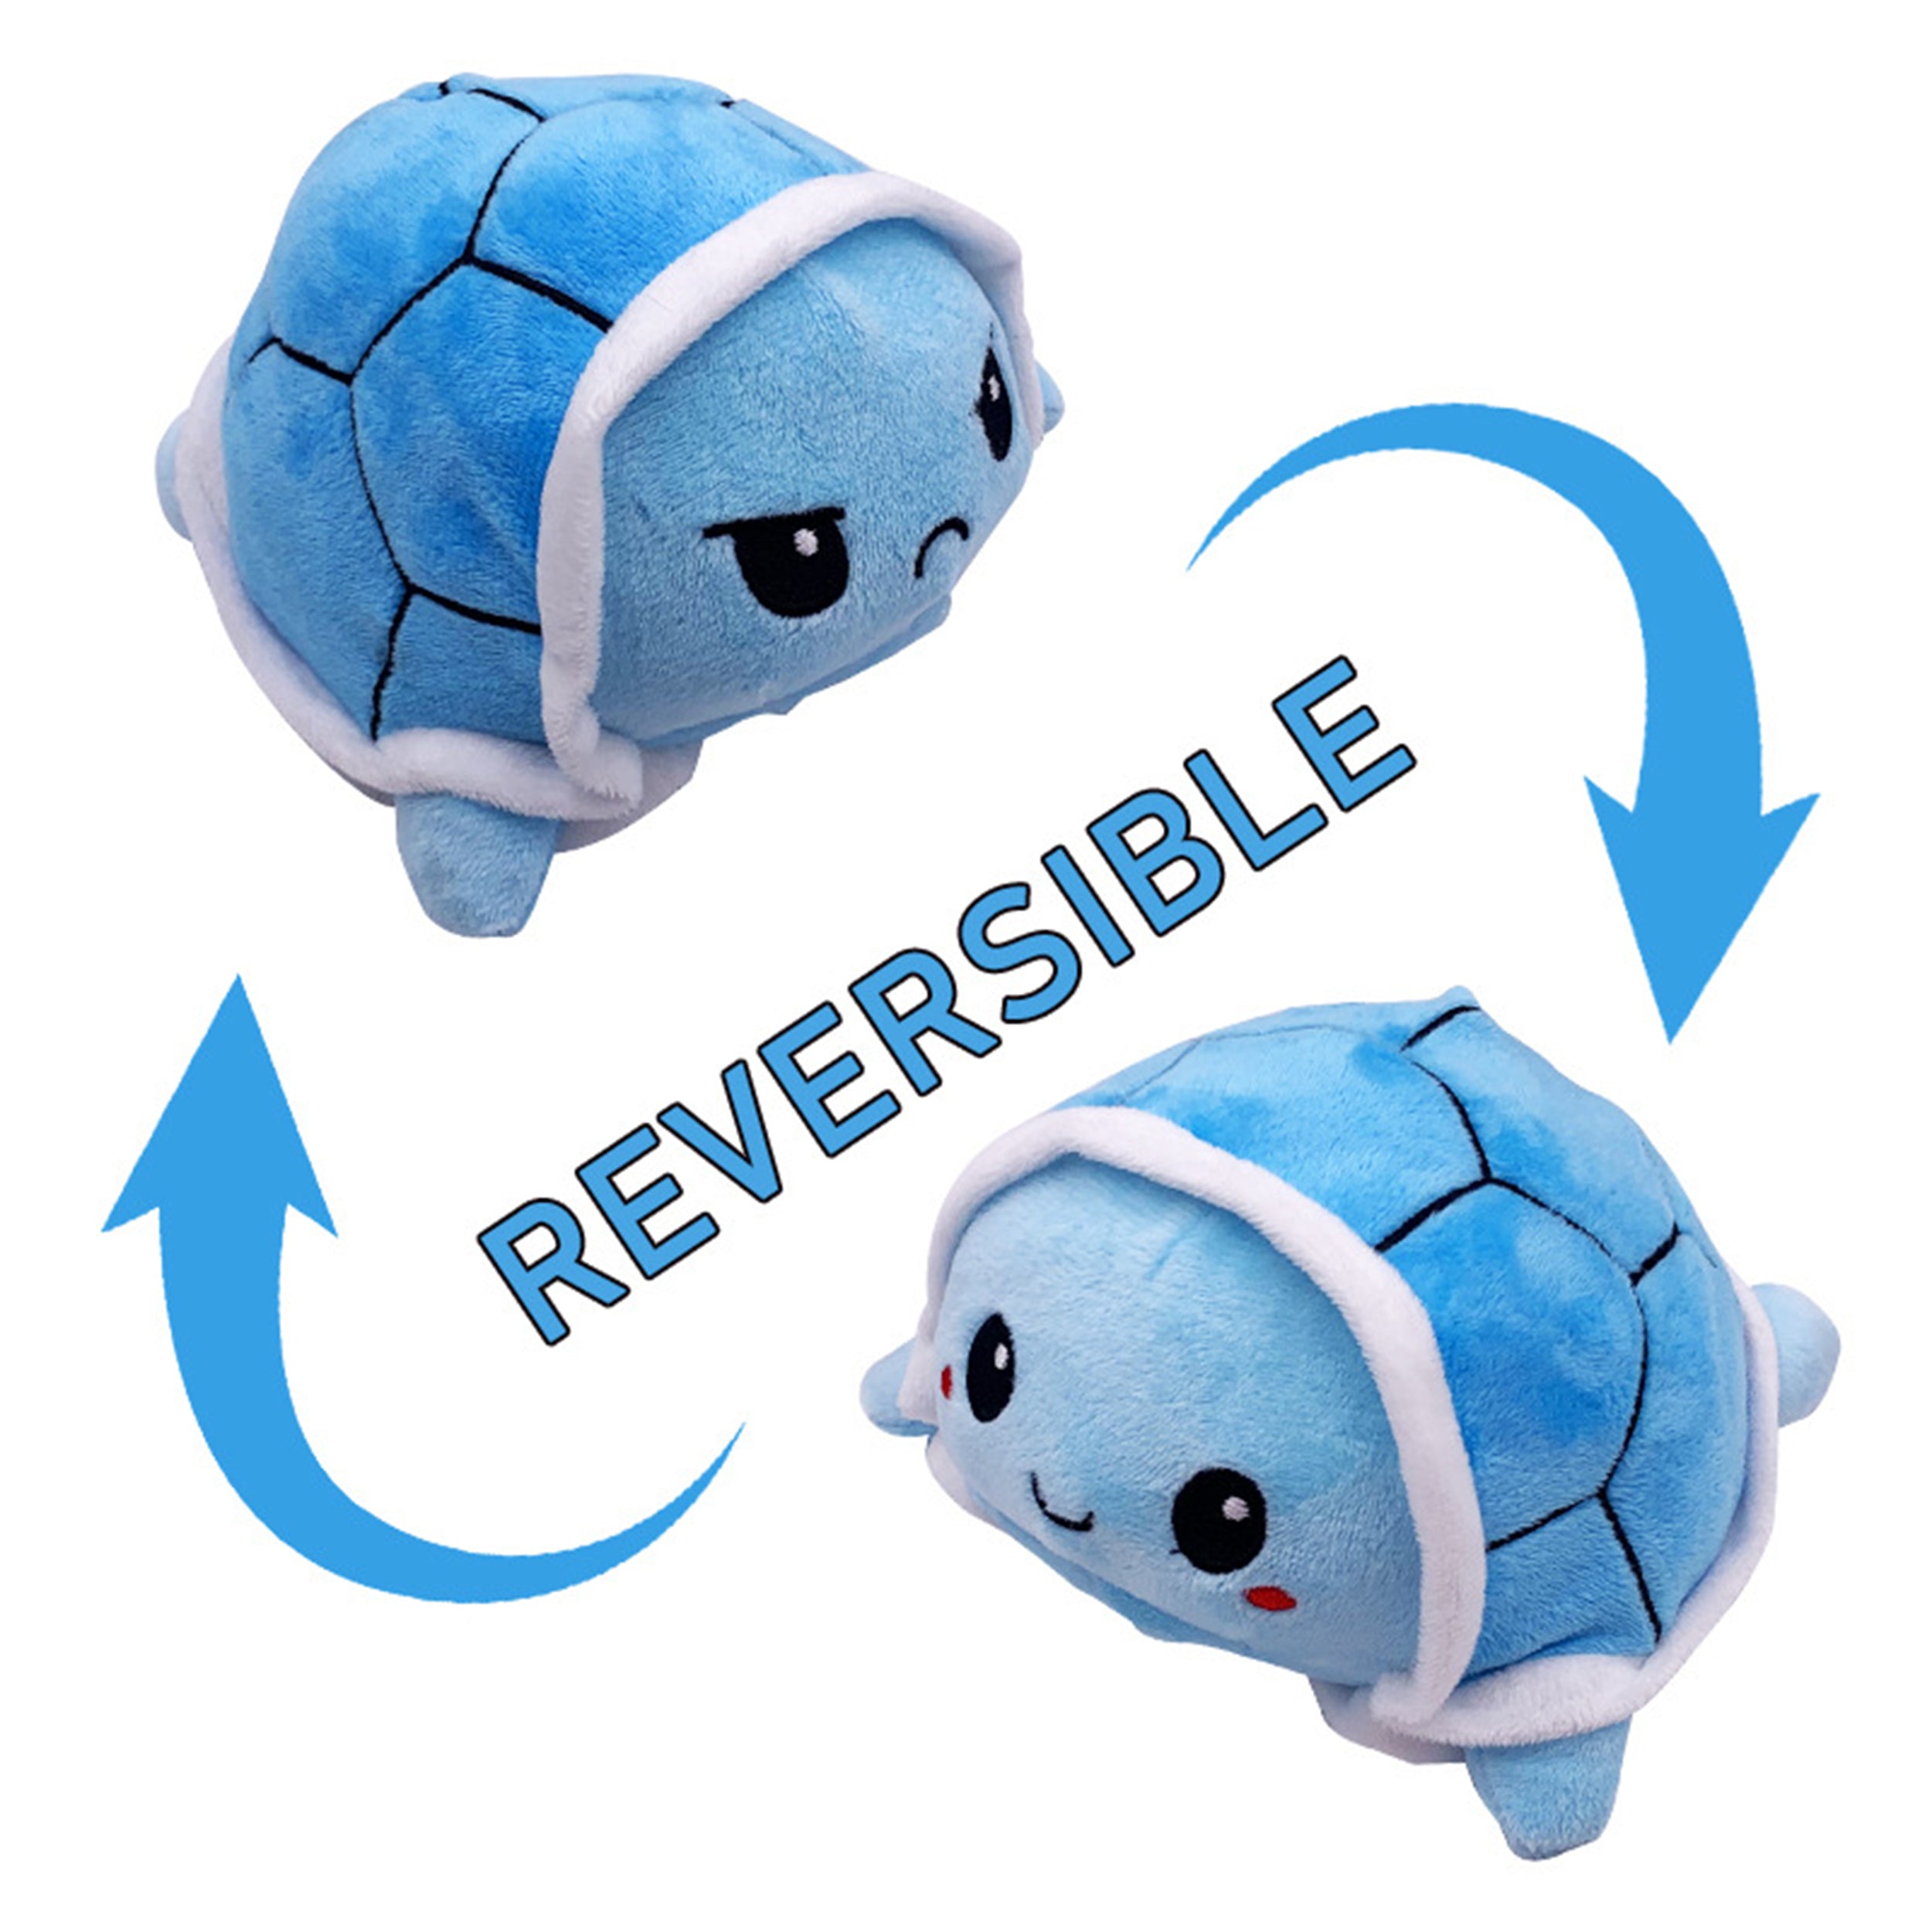 Reversible Turtle Plush Toys